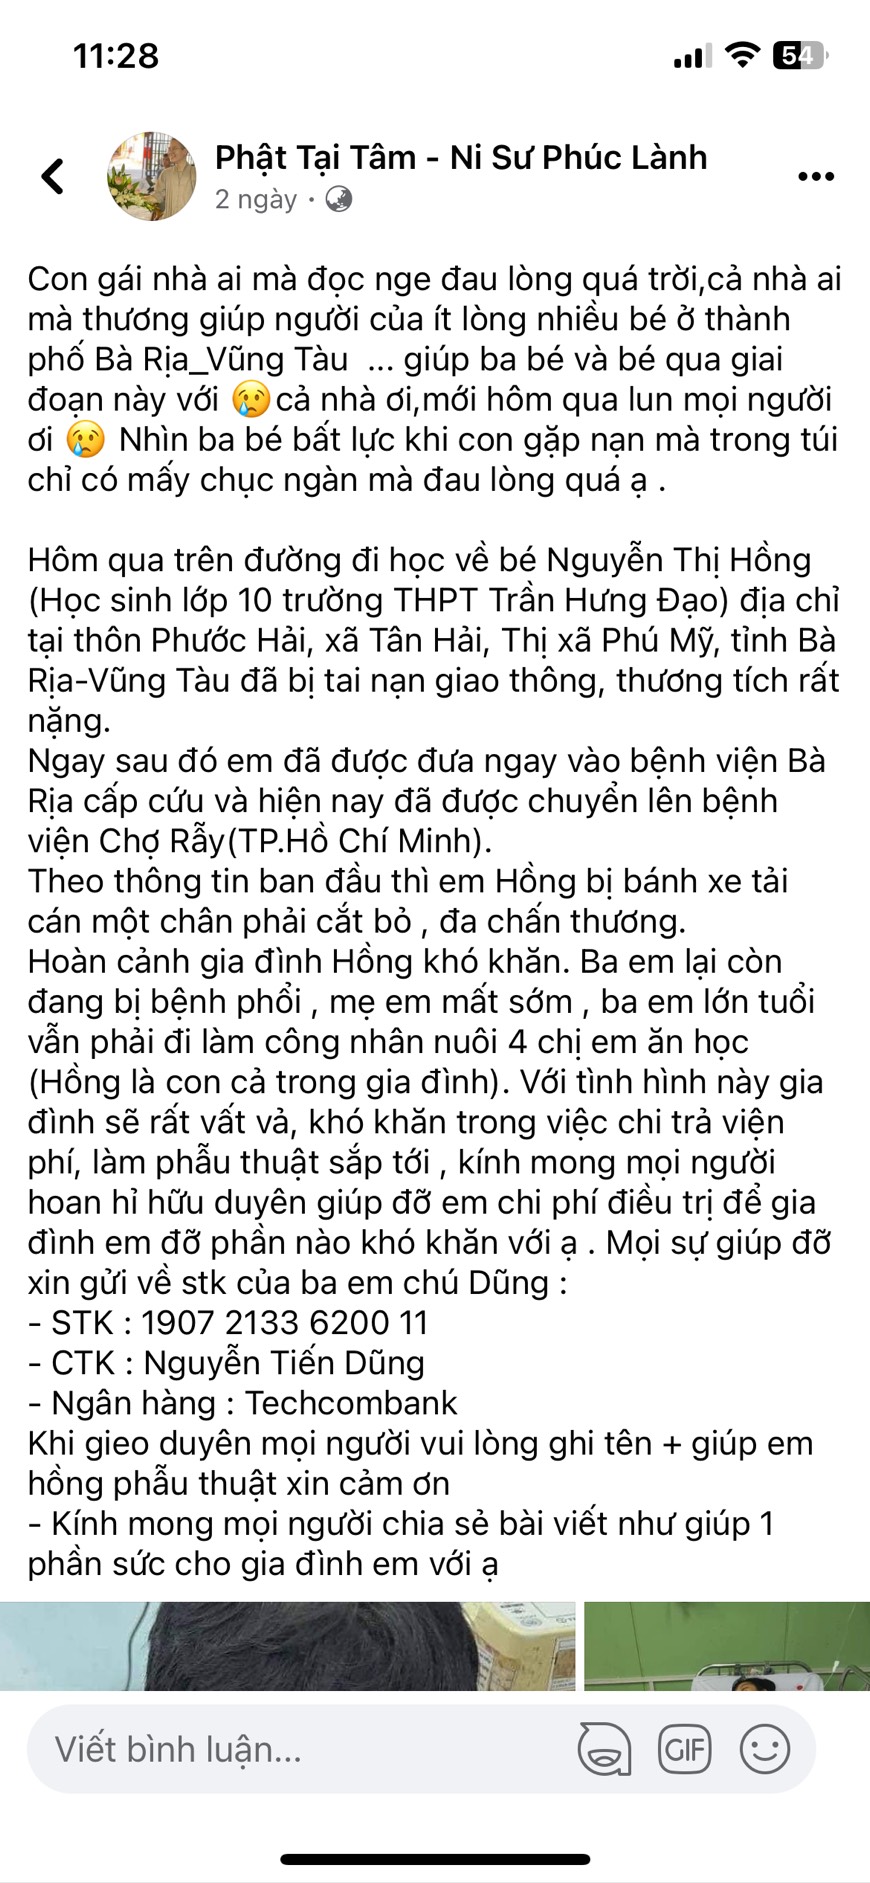 Thông tin chia sẻ hoàn cảnh của bà Trần Thị Hồng trên Facebook, kêu gọi từ thiện từ cộng đồng để trục lợi.